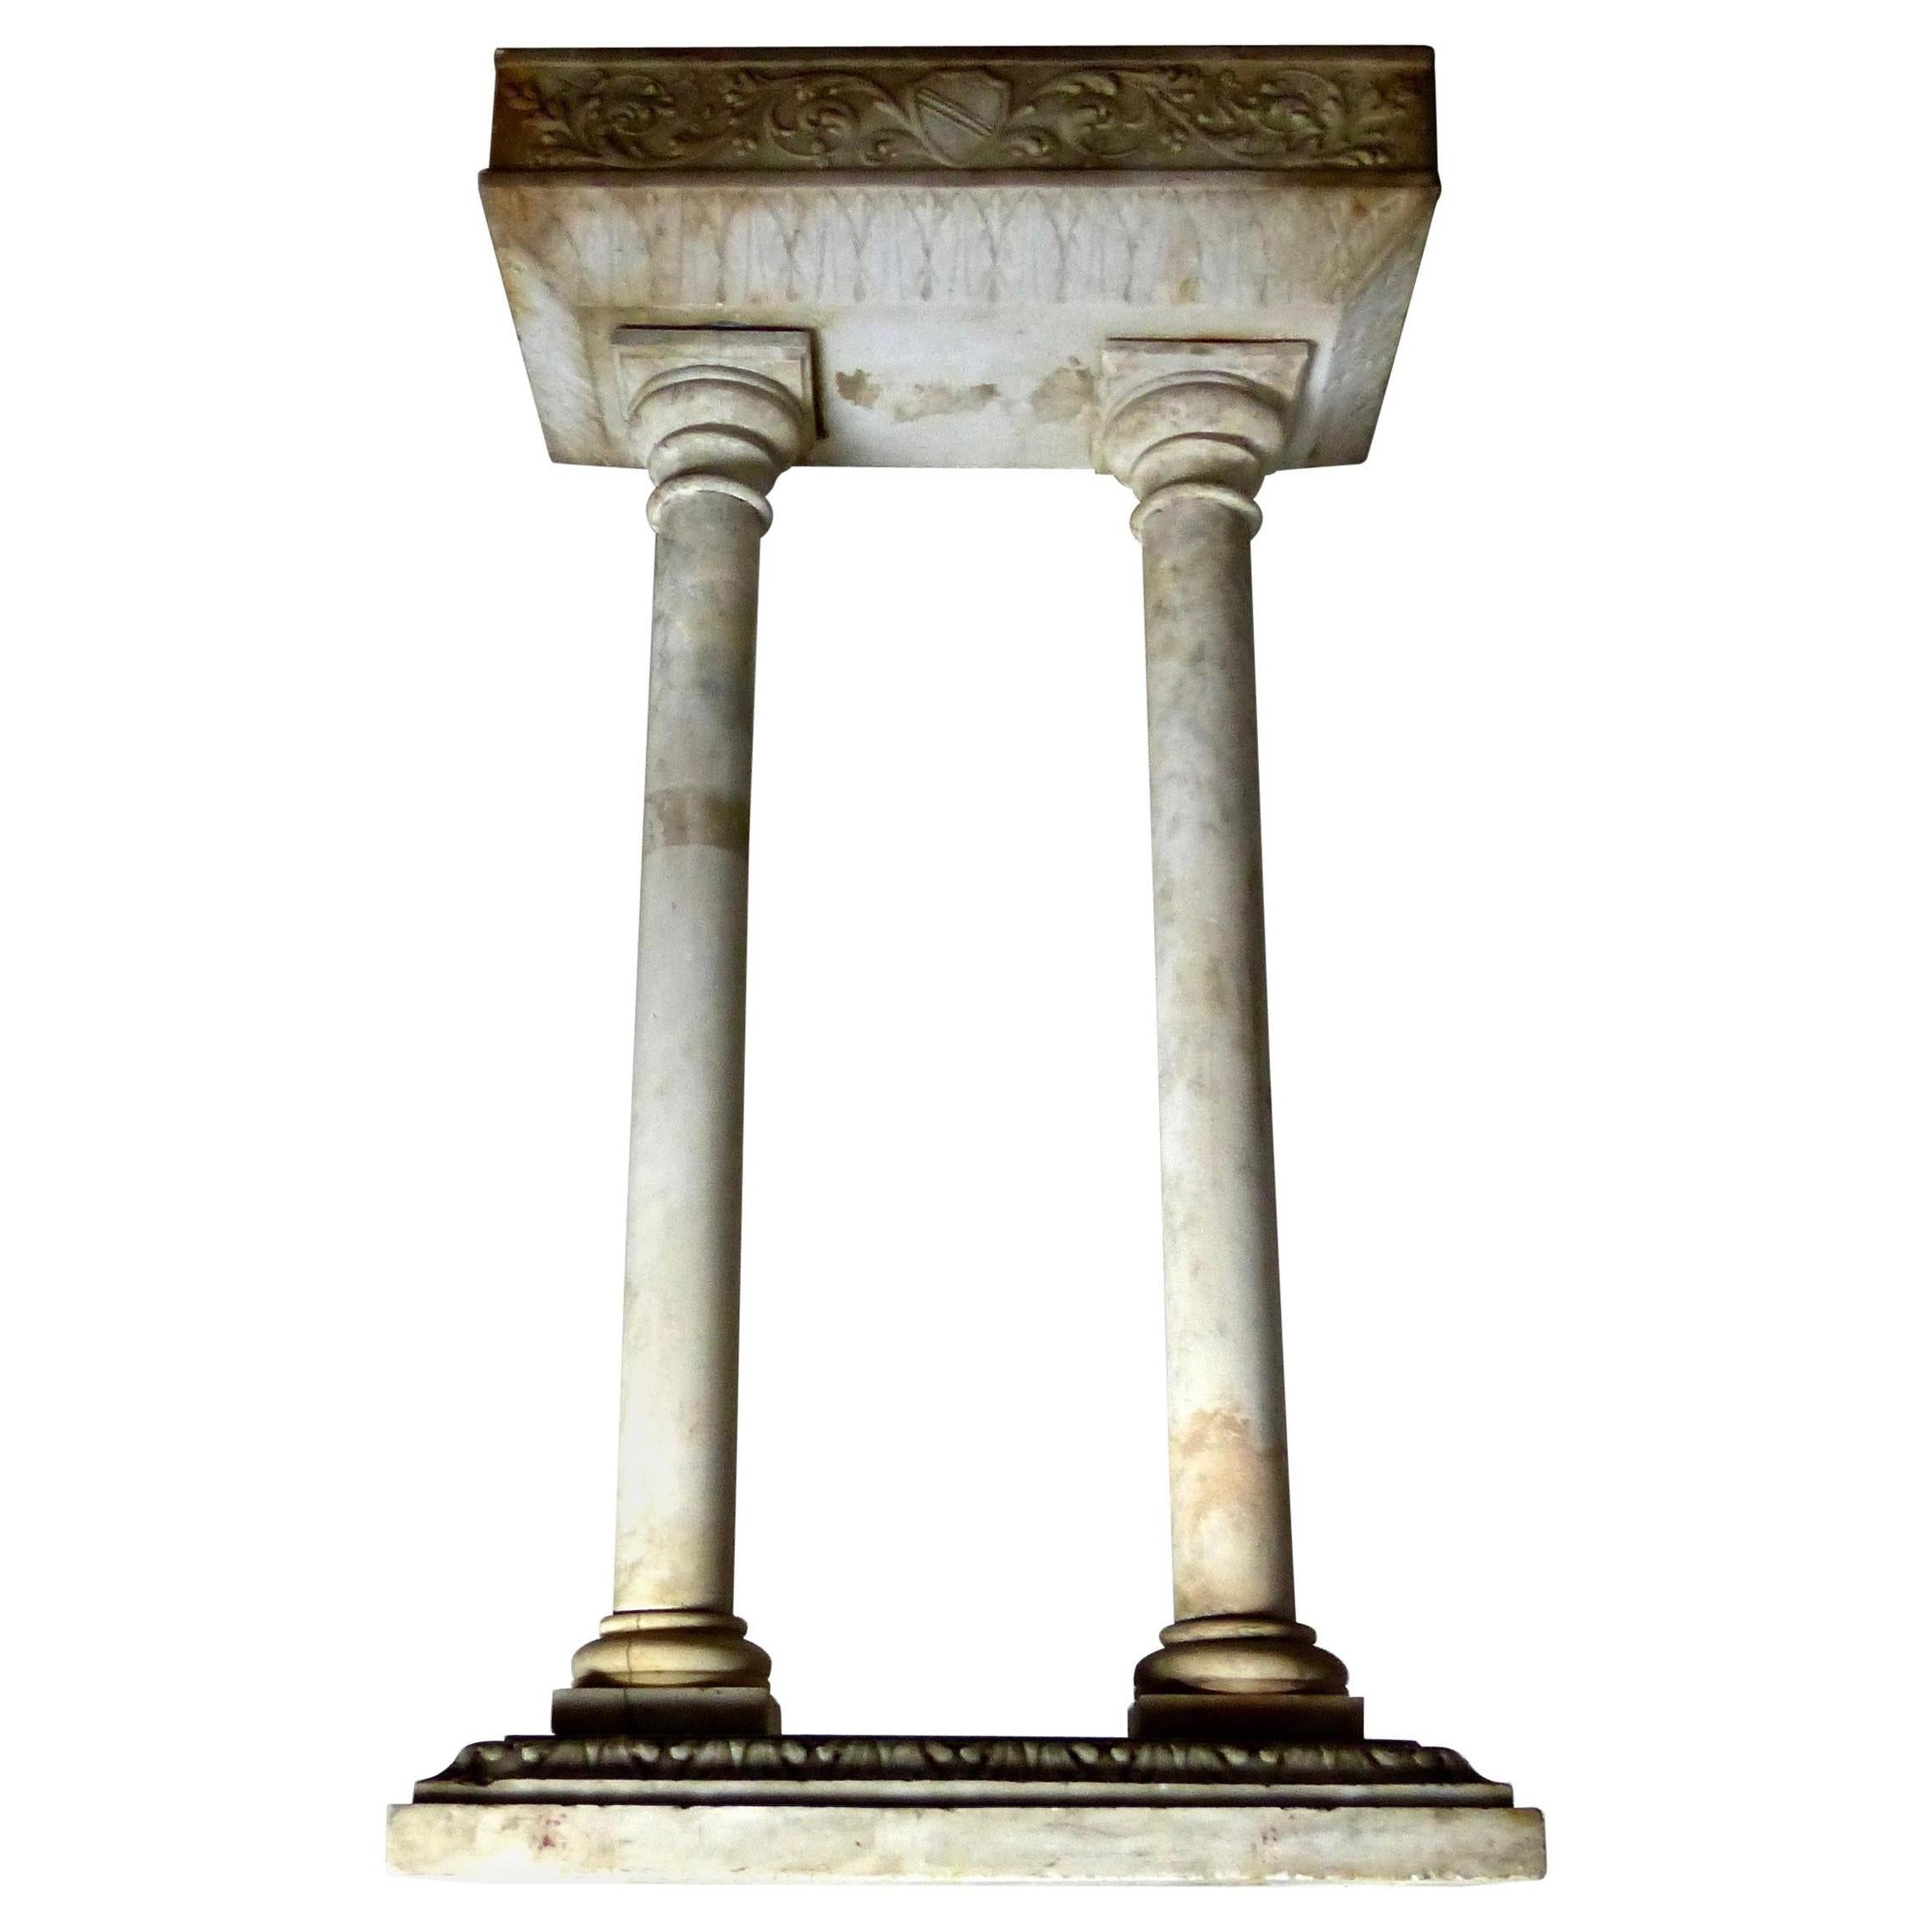 Antique support formel à double colonne, probablement ecclésiastique, en marbre de Carrare sculpté à la main. De jolis motifs de feuilles sur la base et sous le sommet. Utilisez-le pour exposer une sculpture ou ajoutez un plateau pour créer une